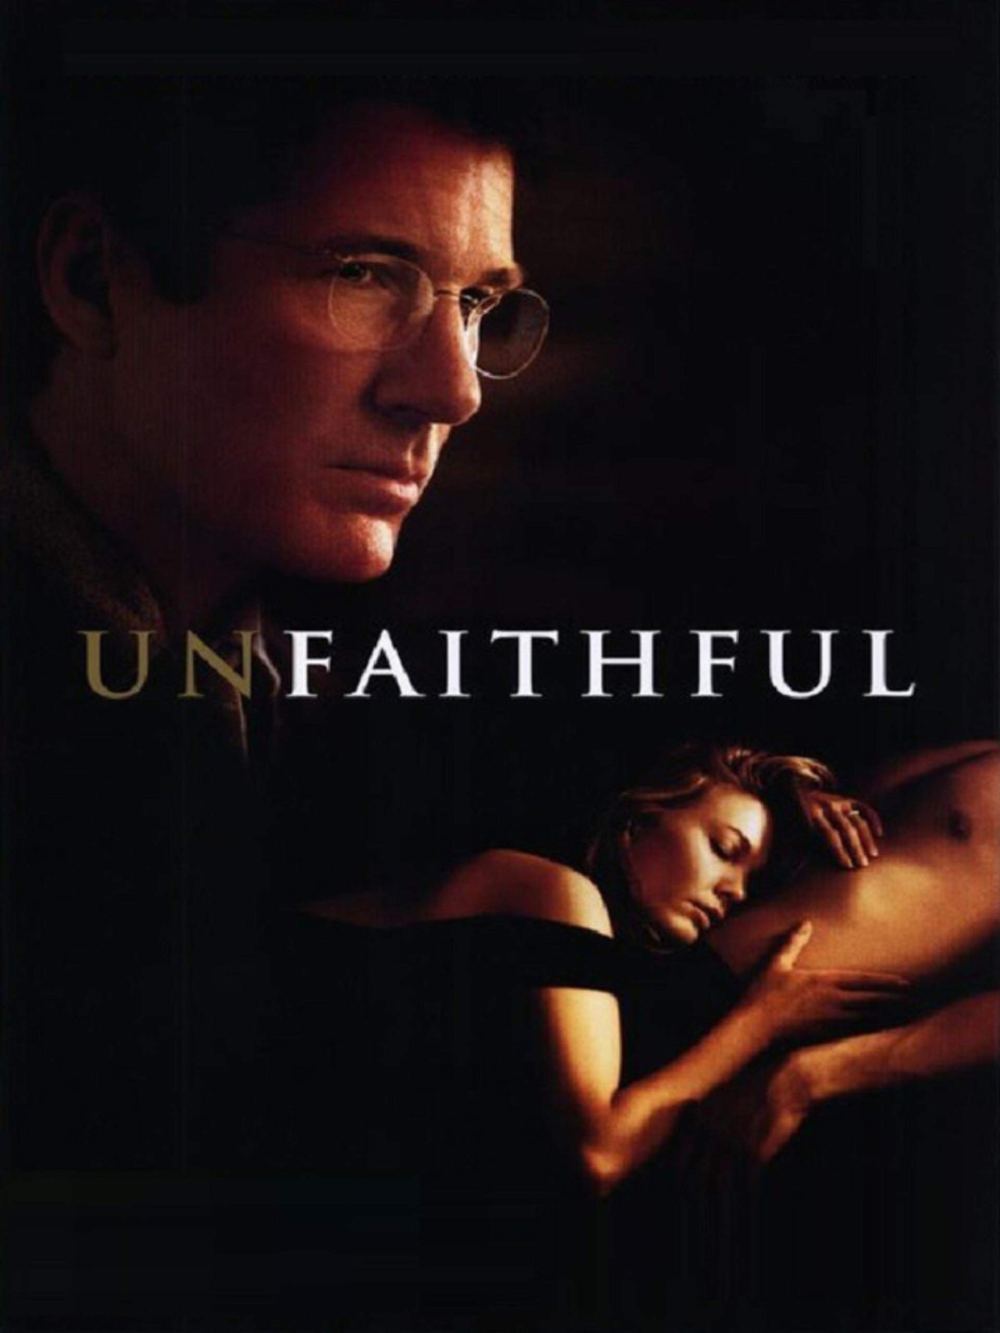 Unfaithful movie poster